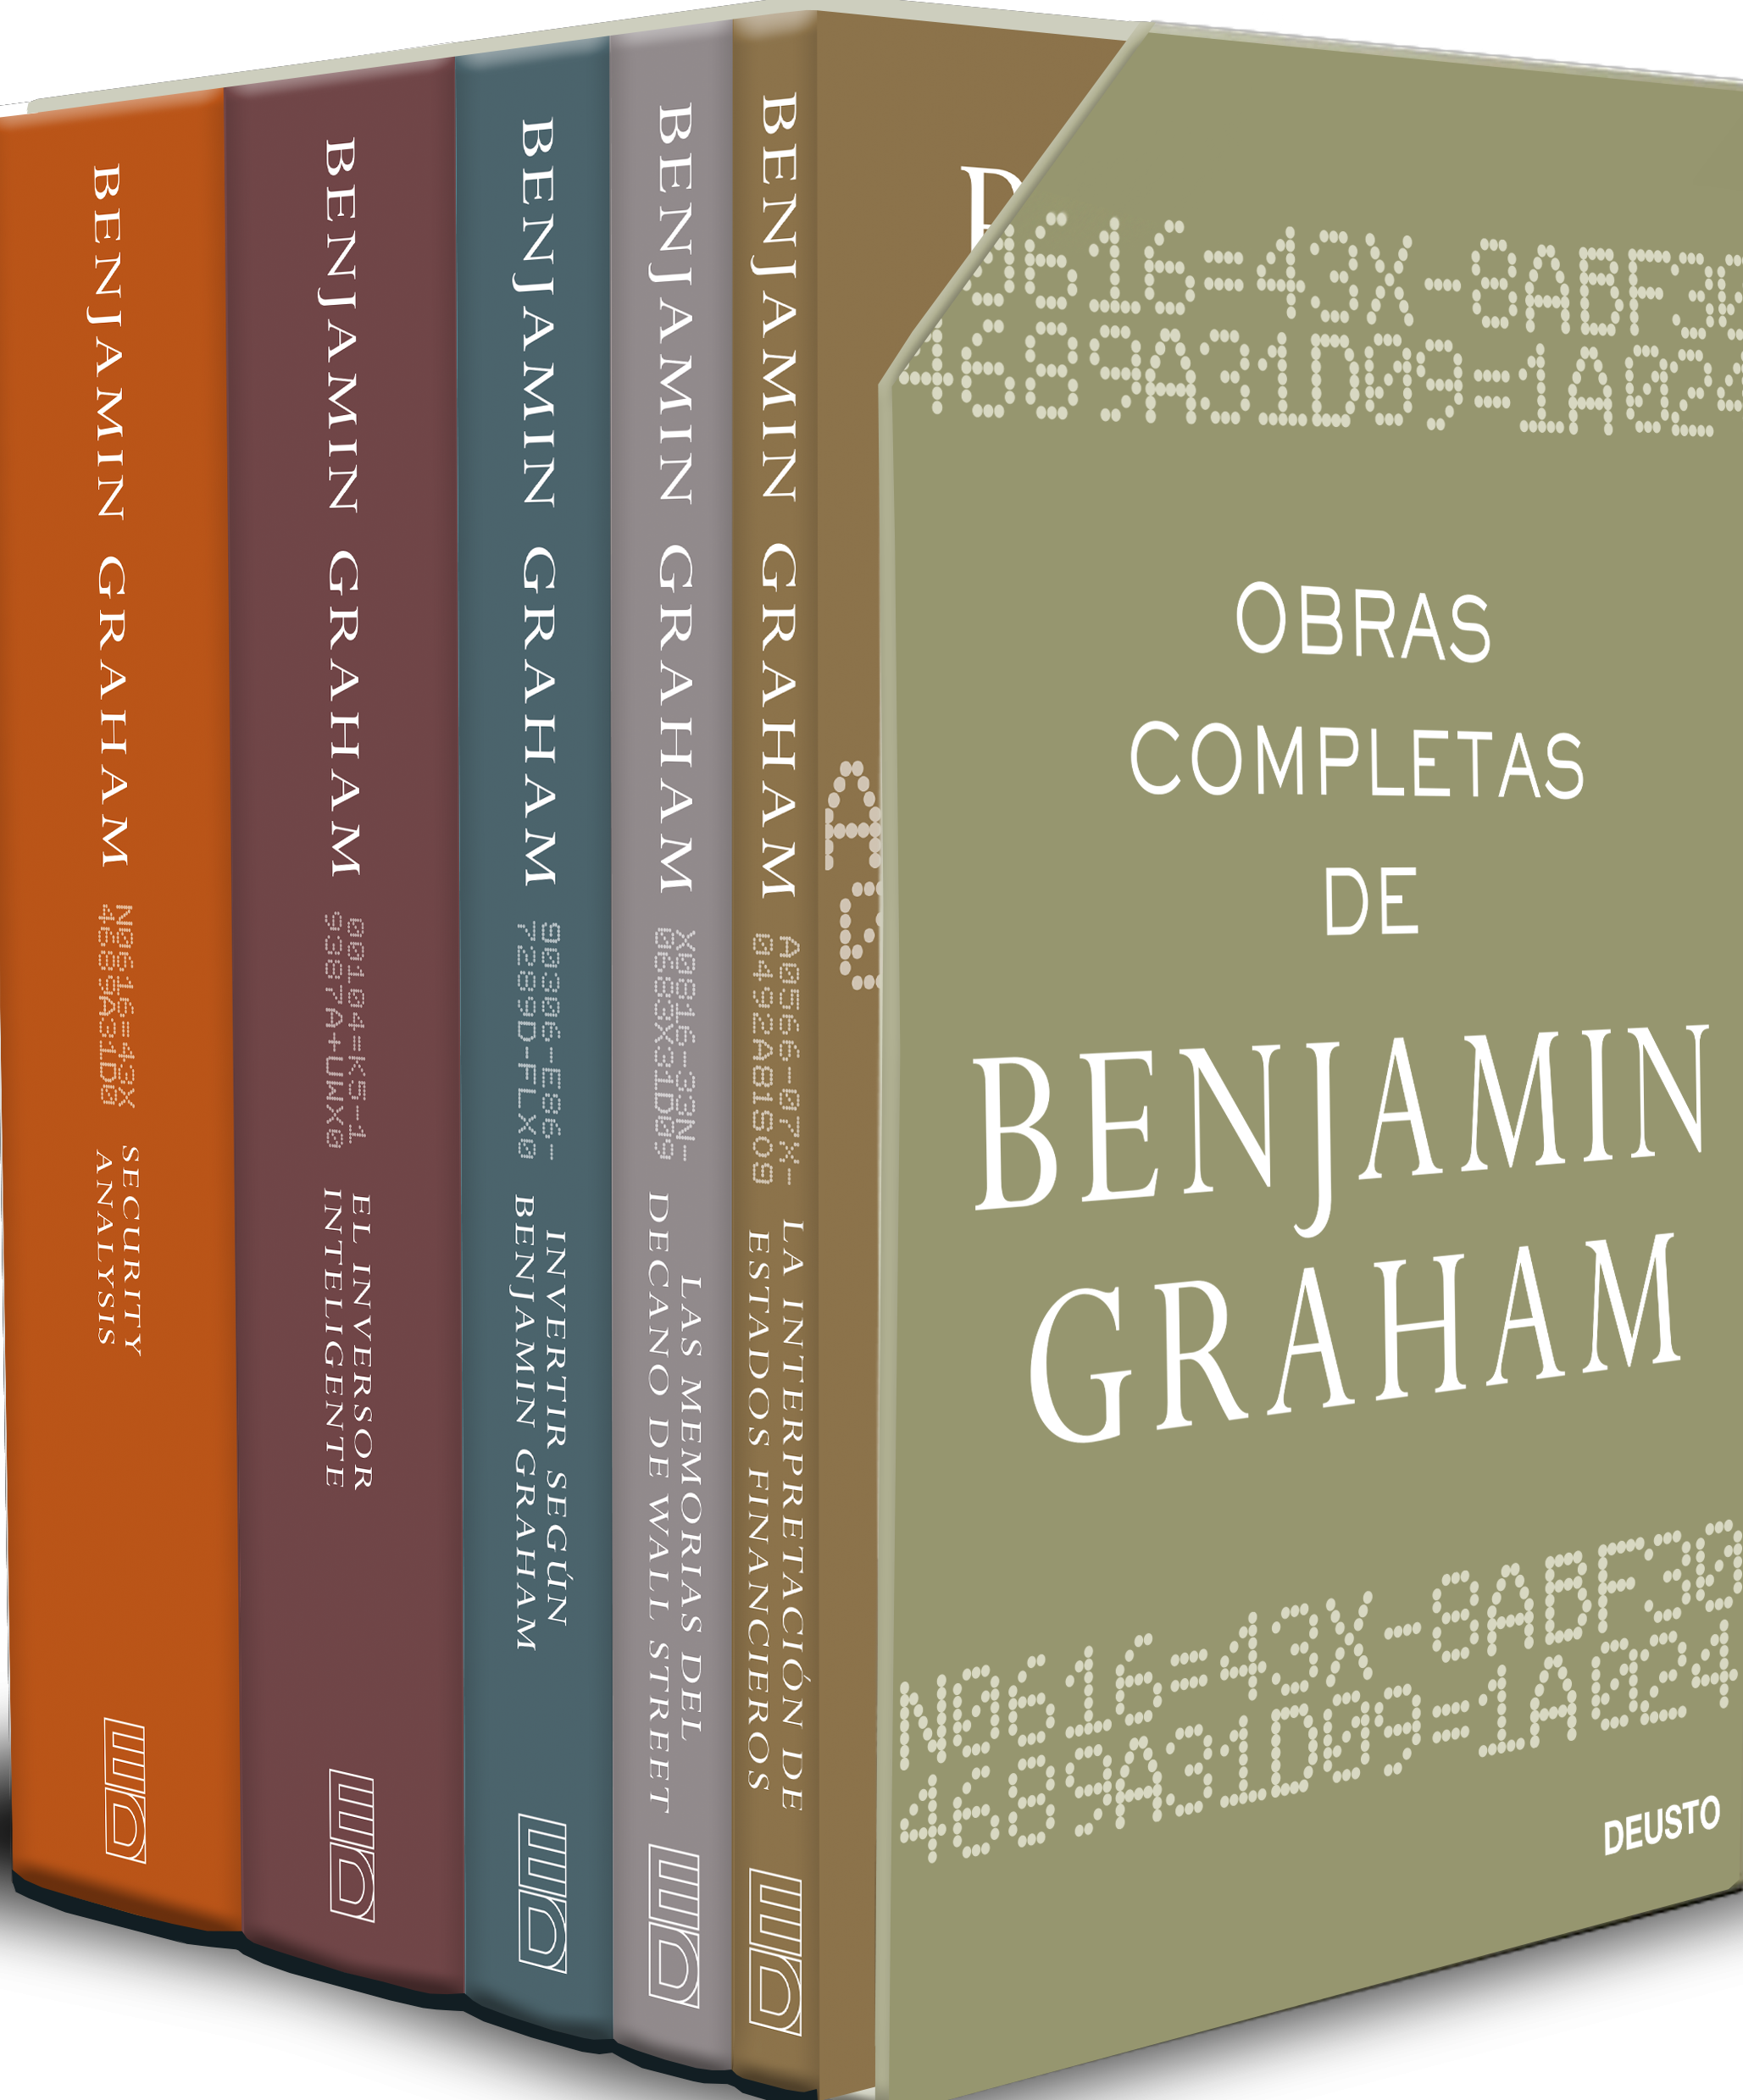 El inversor inteligente de Benjamin Graham, resumen del libro